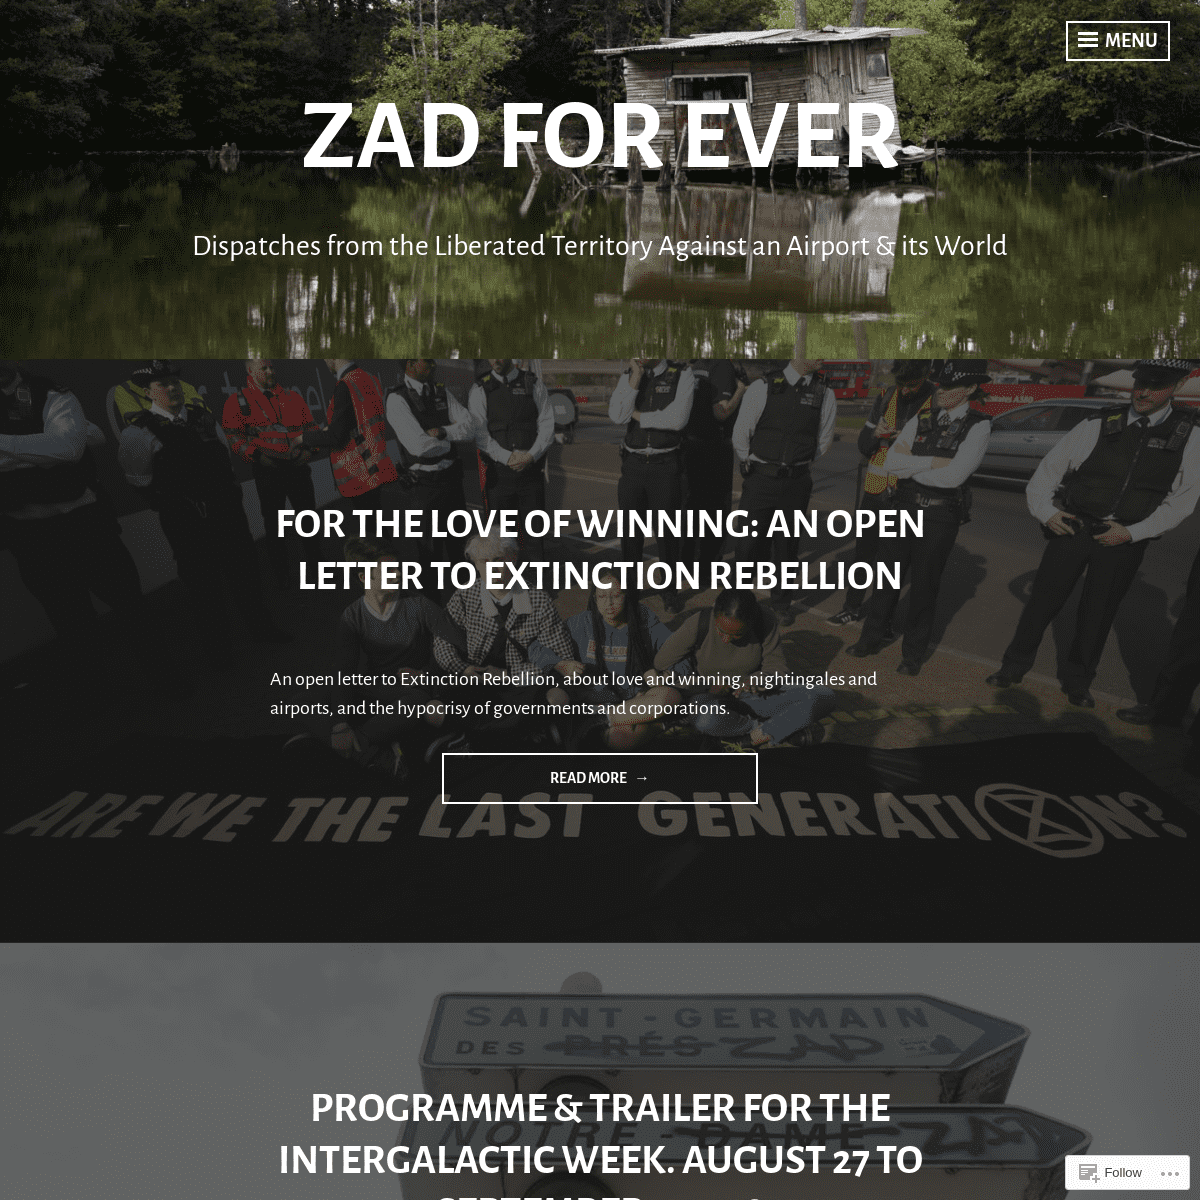 A complete backup of zadforever.blog